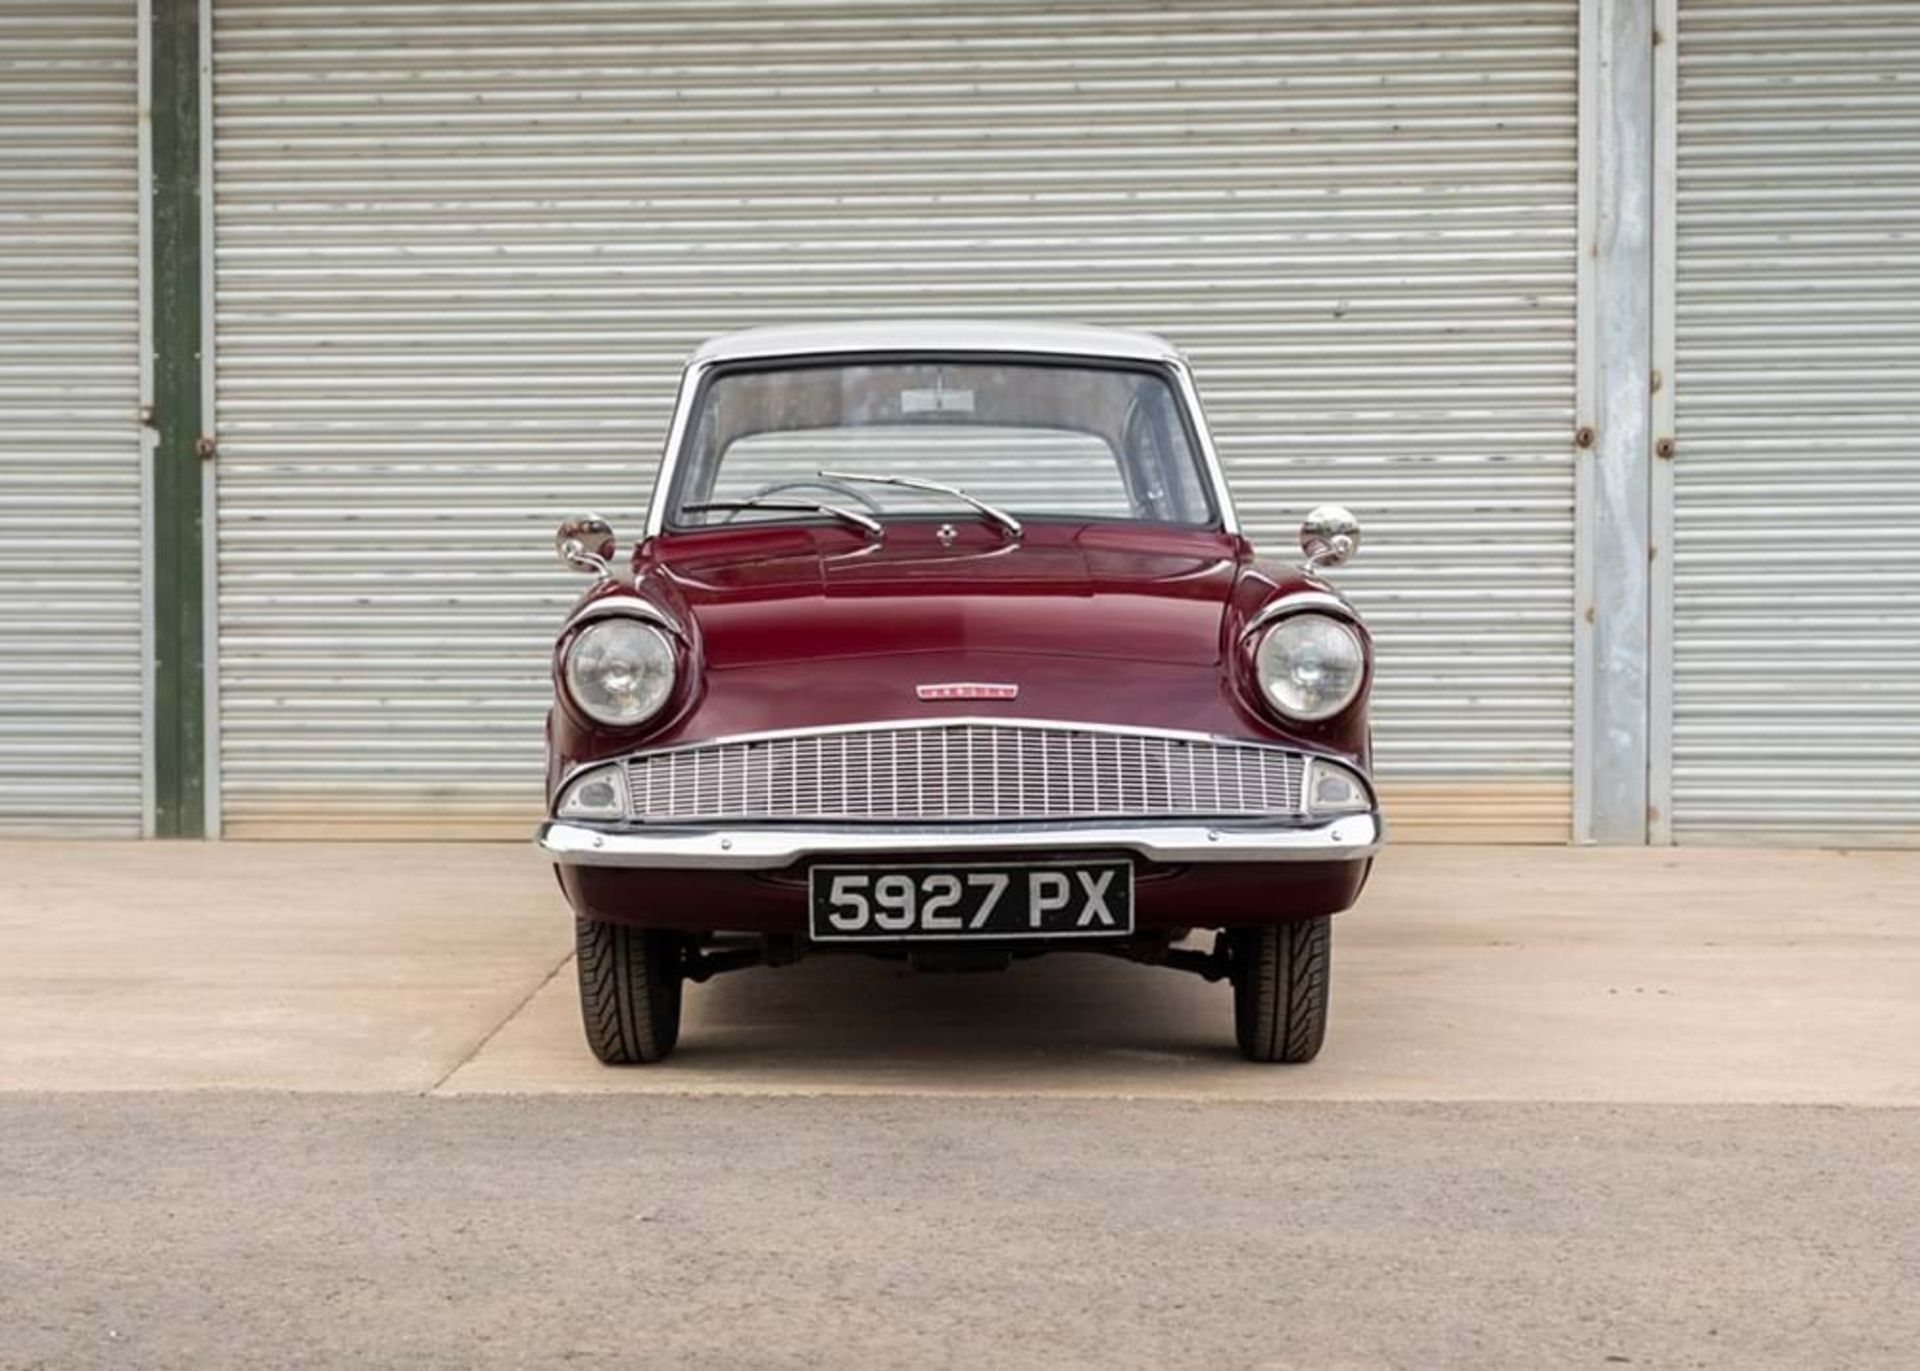 1960 Ford Anglia - Image 6 of 10